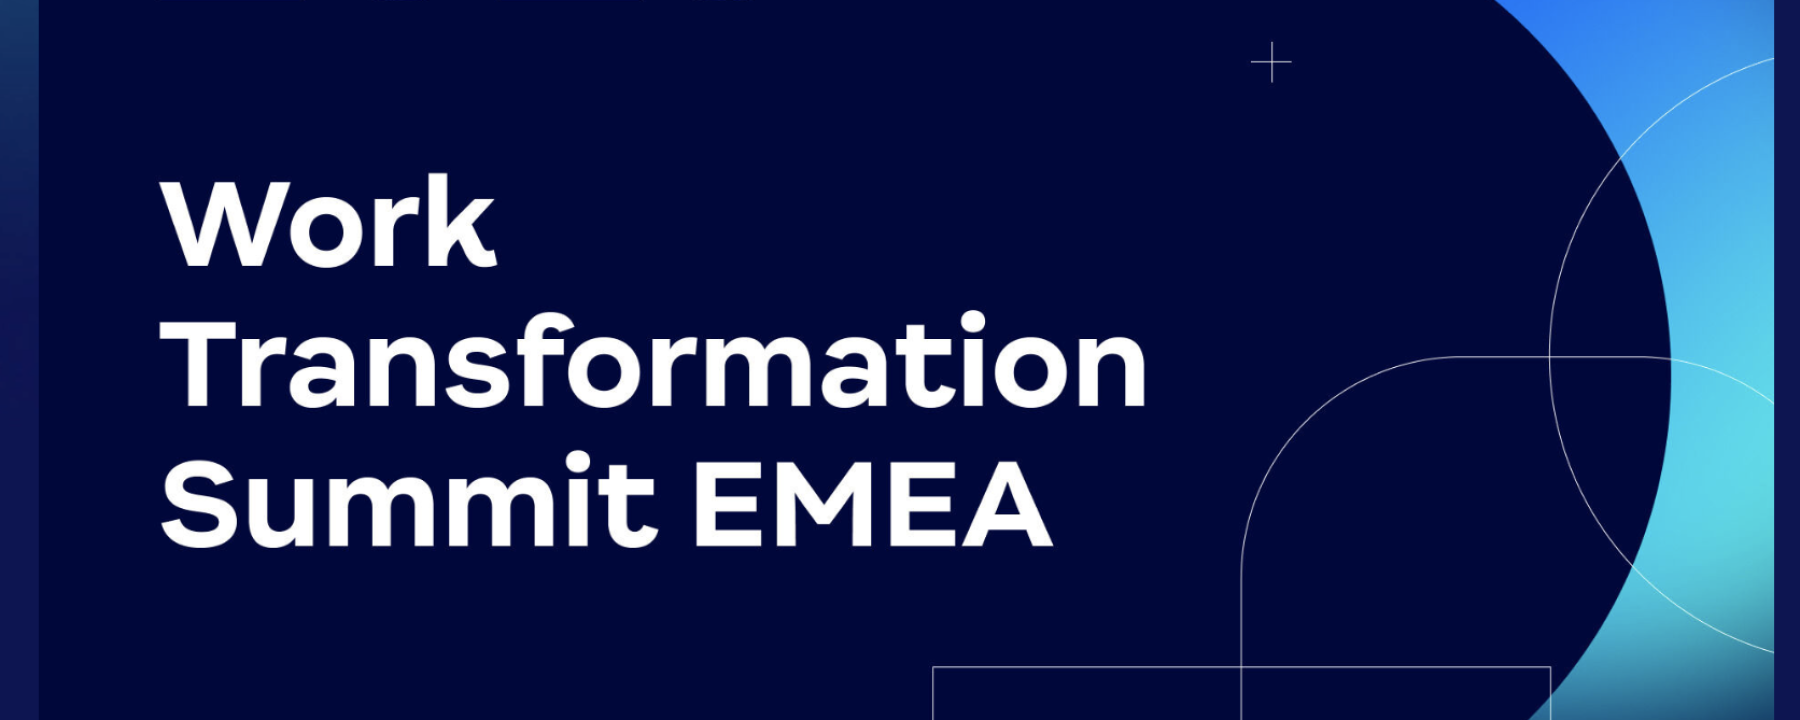 Work Transformation Summit EMEA